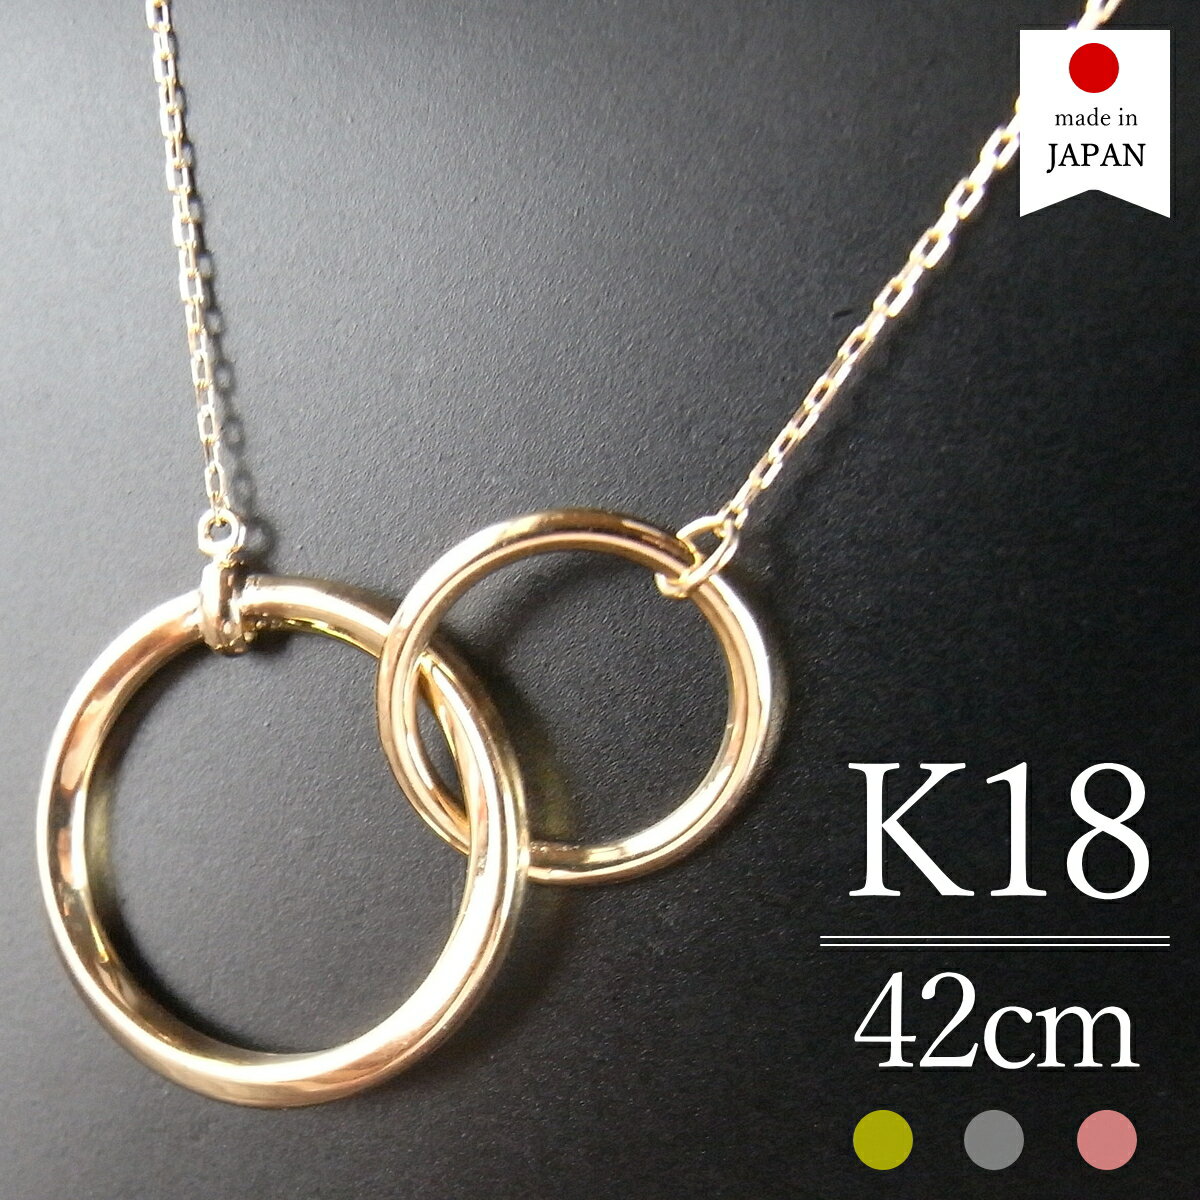  18金 ネックレス レディース ゴールド K18 18k k18ネックレス 18金ネックレス 18kネックレス 日本製 